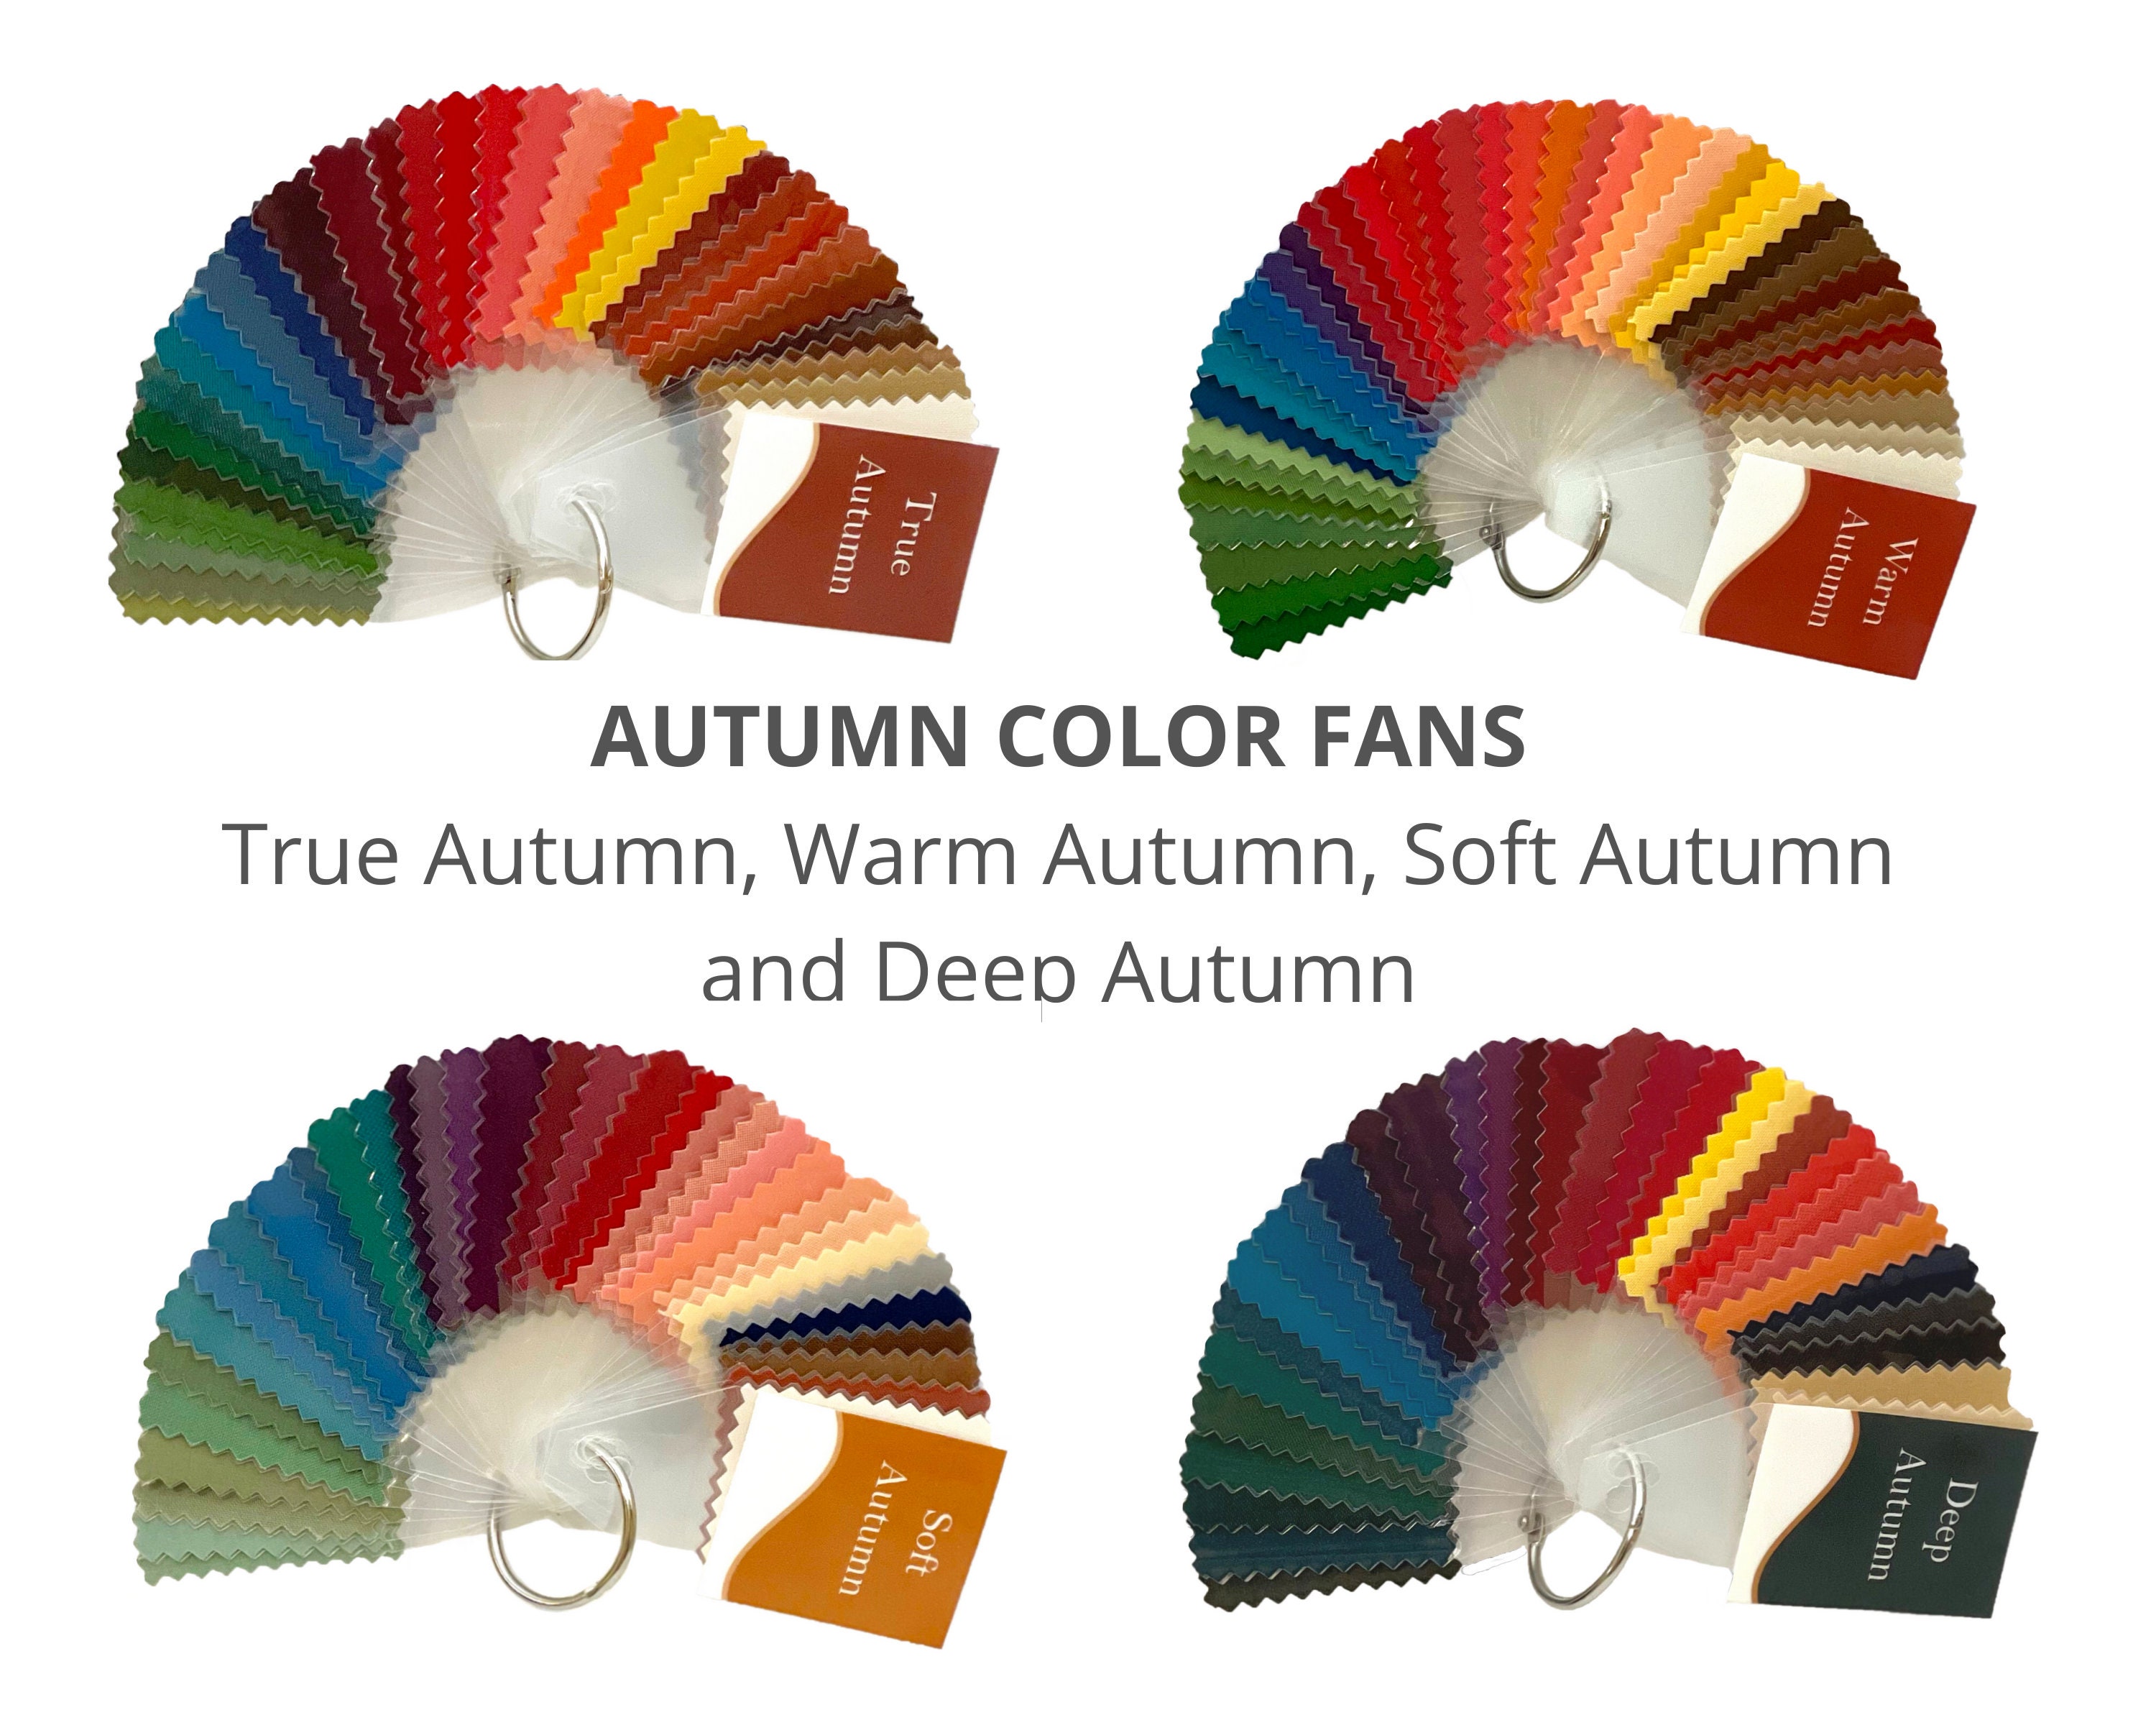 Deep Autumn Color Palette - Color Palettes